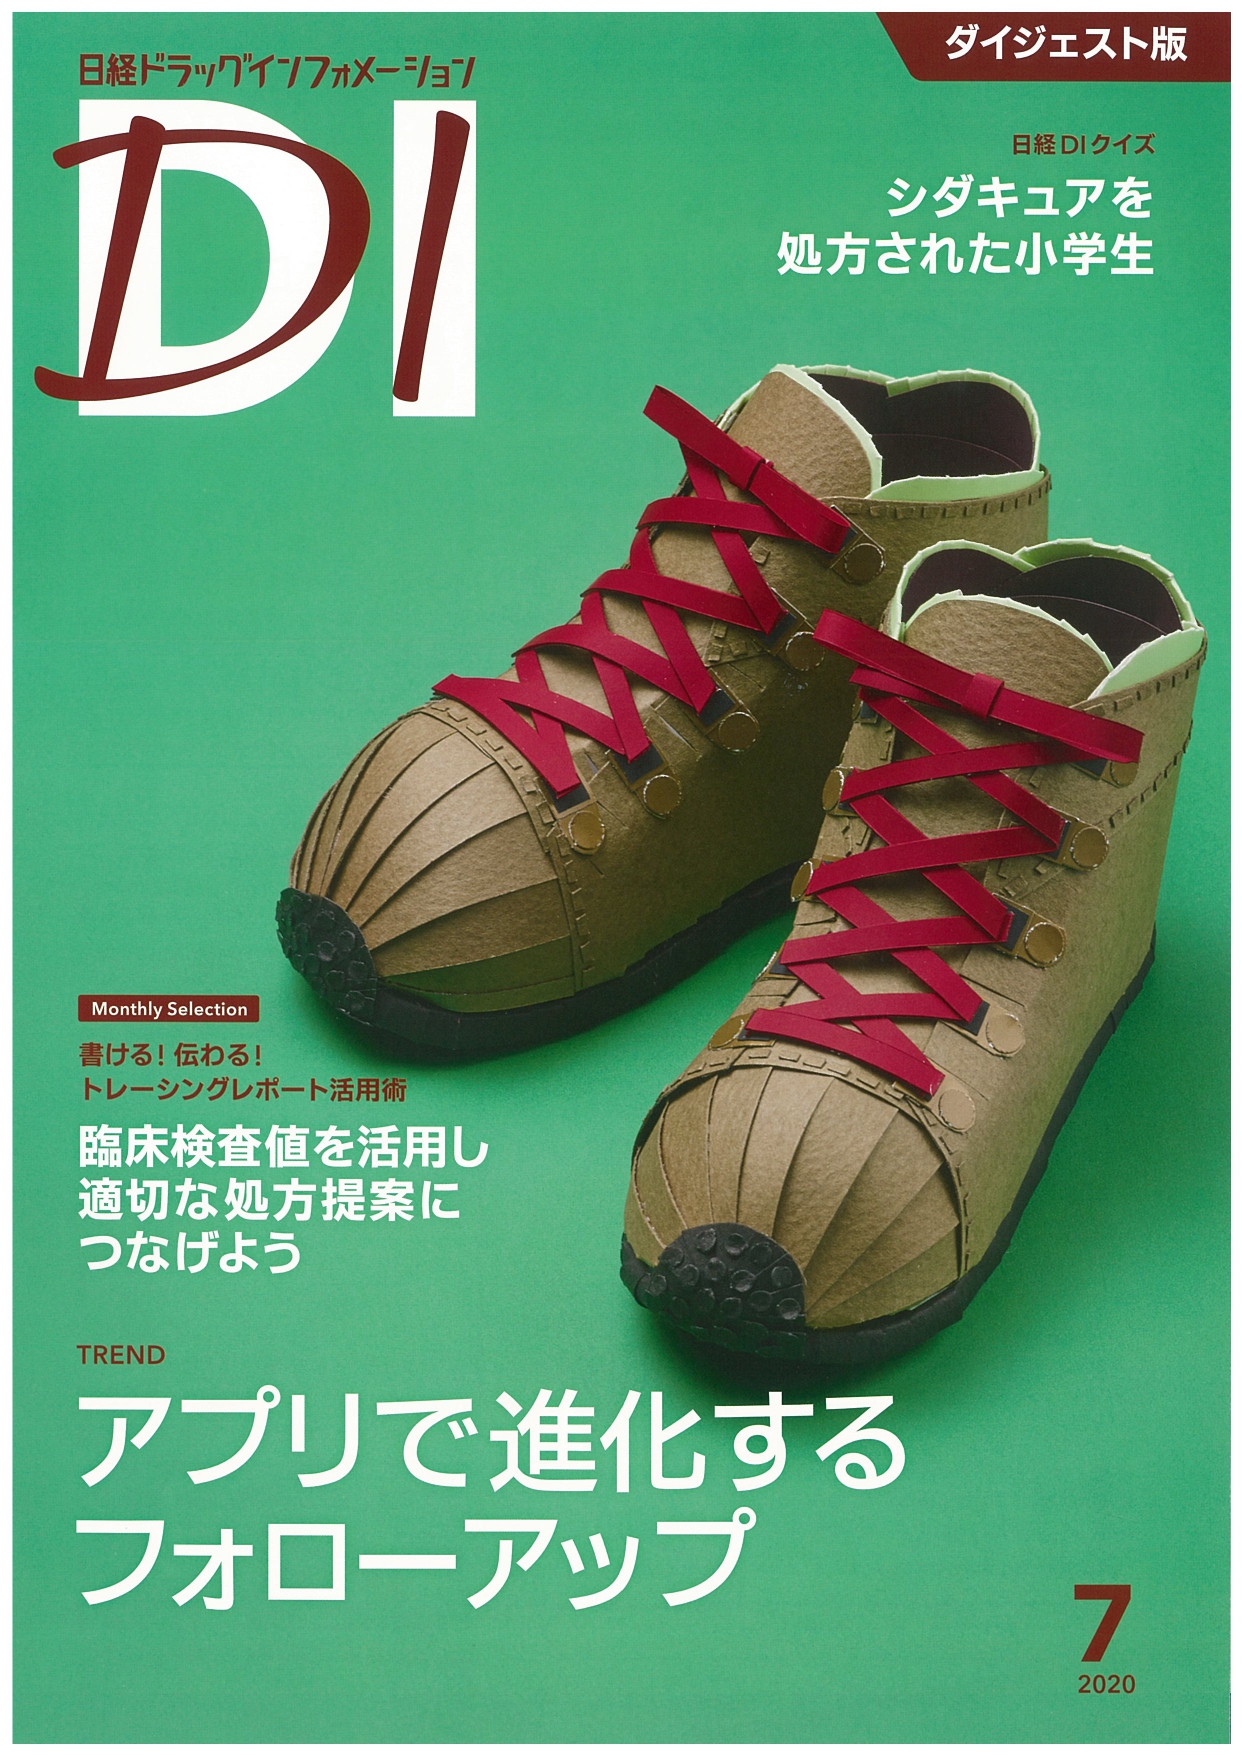 日経D1表紙